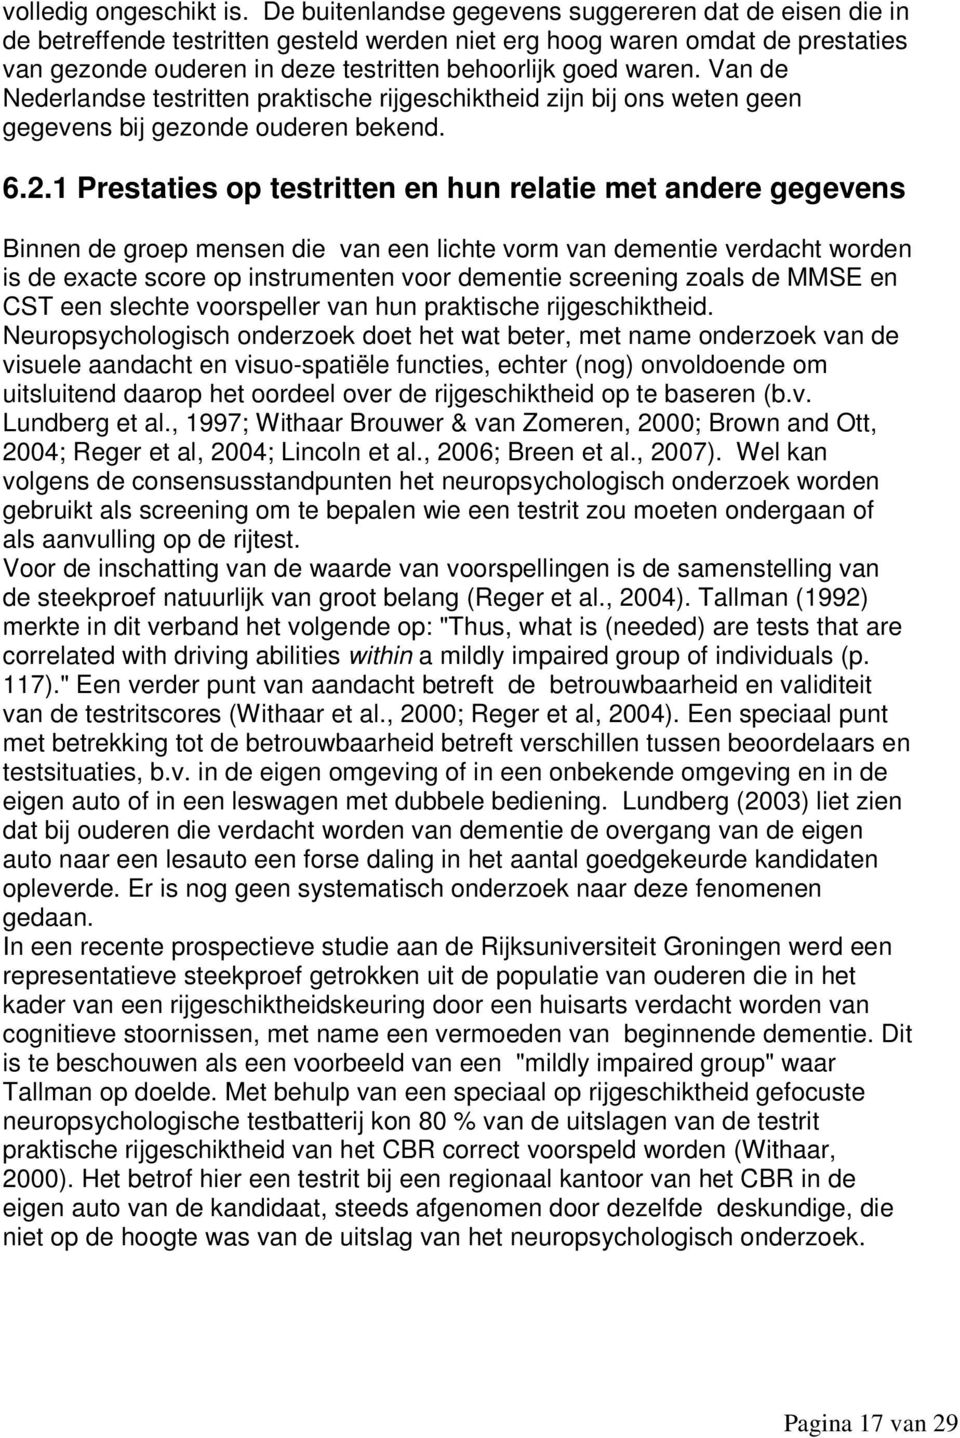 Van de Nederlandse testritten praktische rijgeschiktheid zijn bij ons weten geen gegevens bij gezonde ouderen bekend. 6.2.